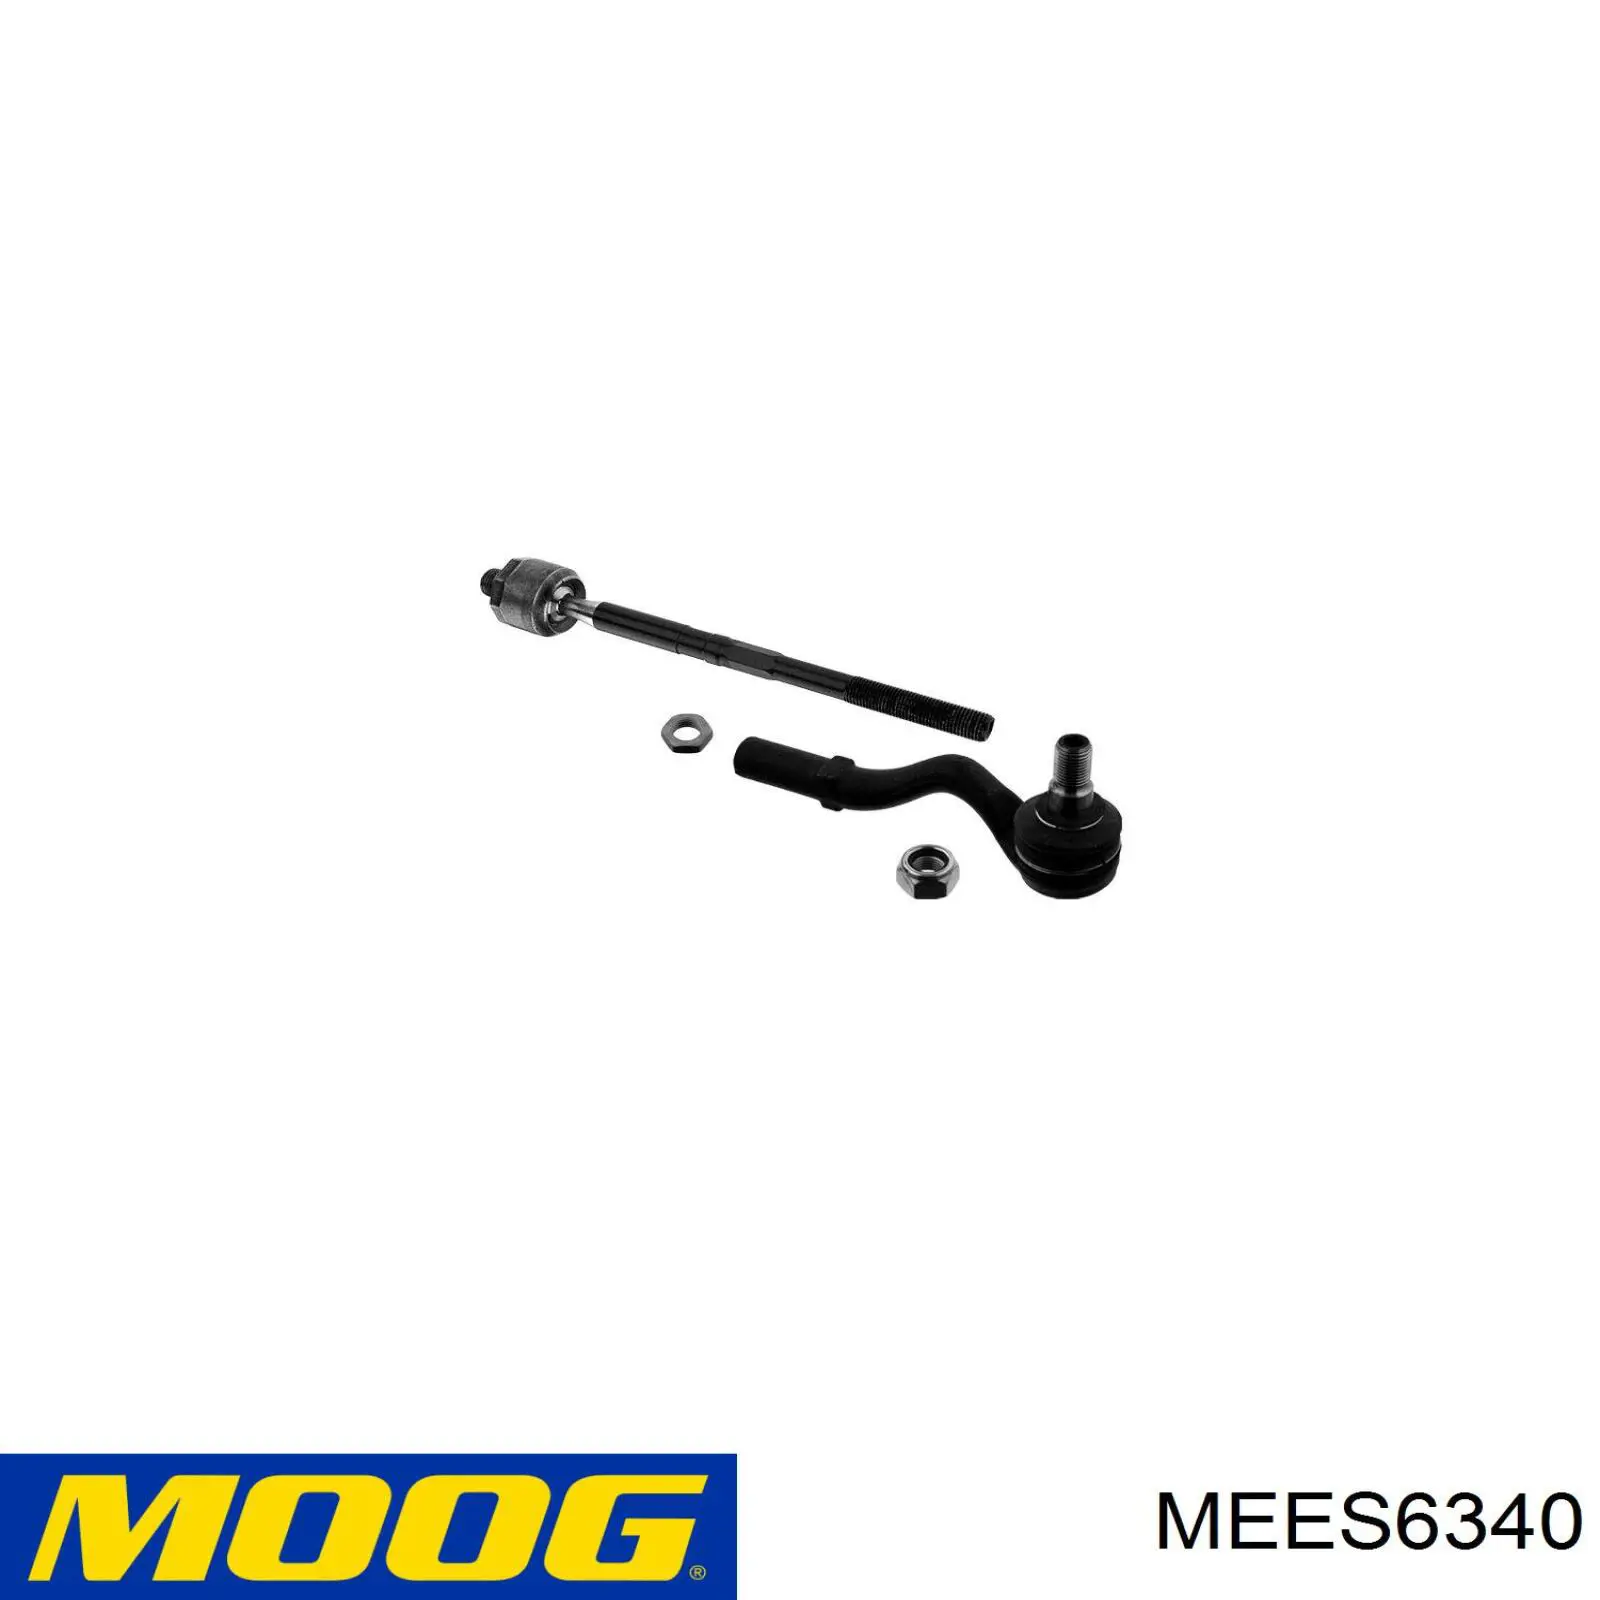 Rótula barra de acoplamiento exterior MEES6340 Moog